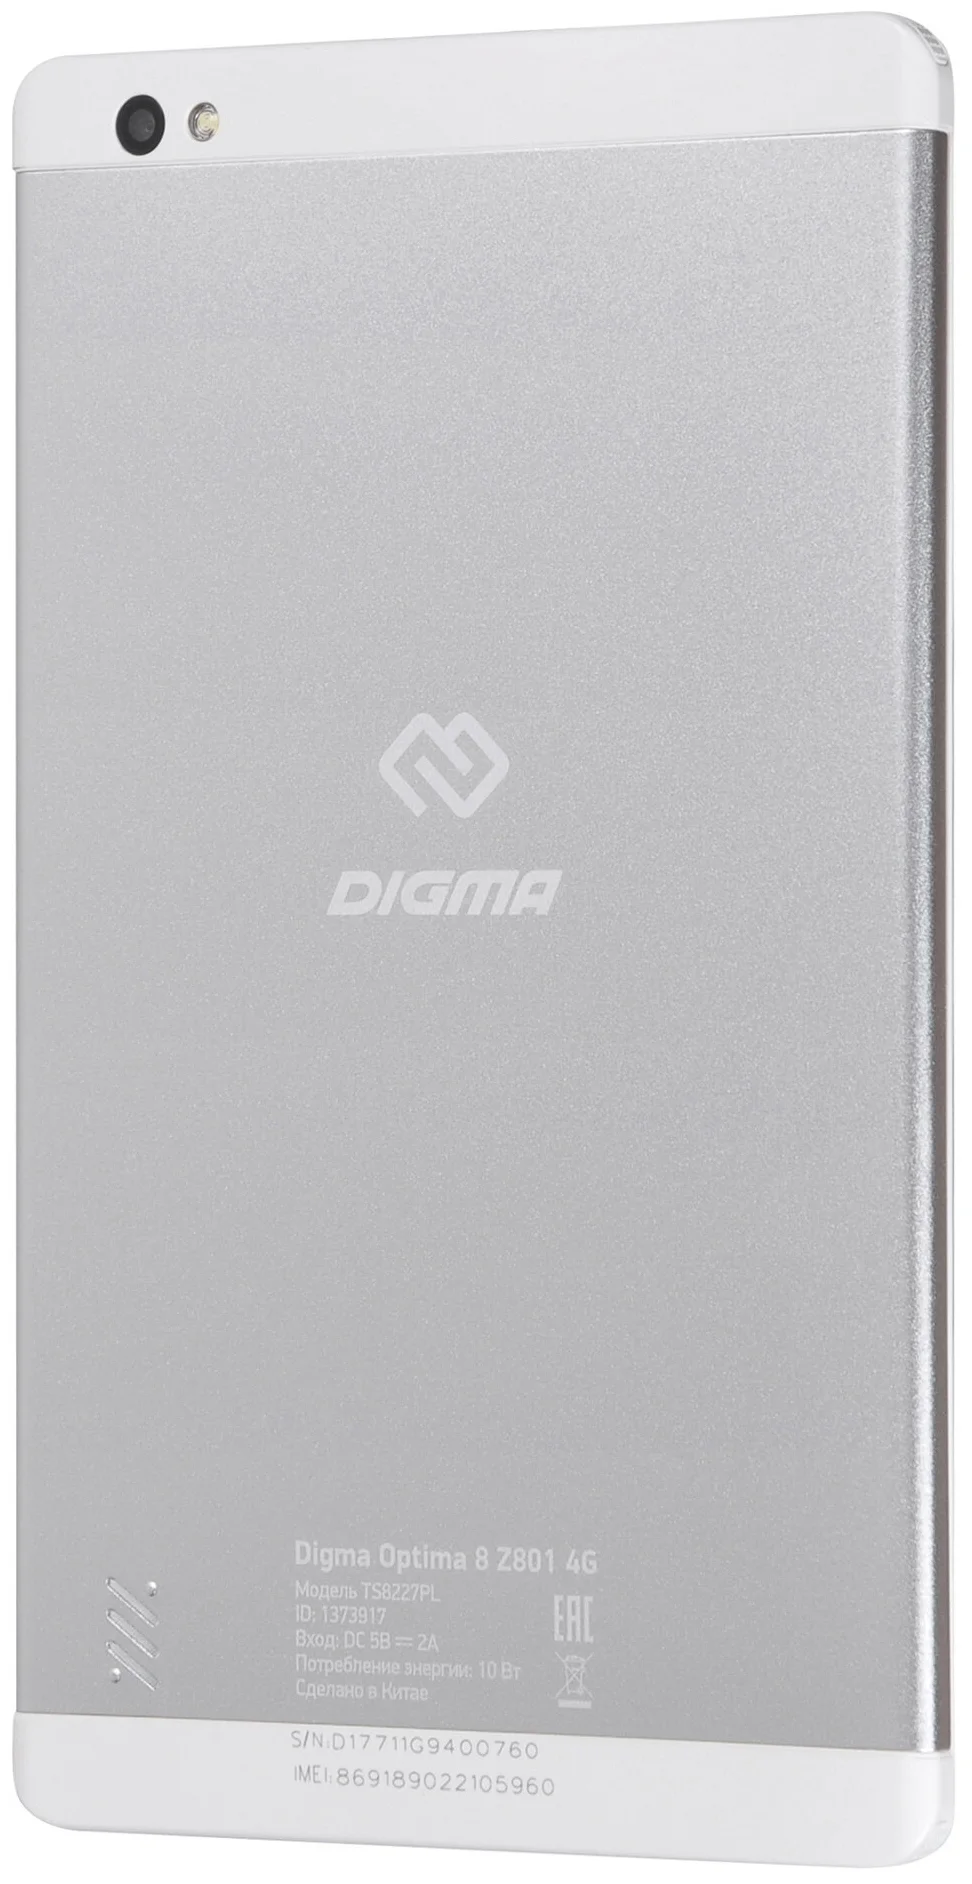 DIGMA Optima 8 Z801 4G - процессор: Spreadtrum SC9863